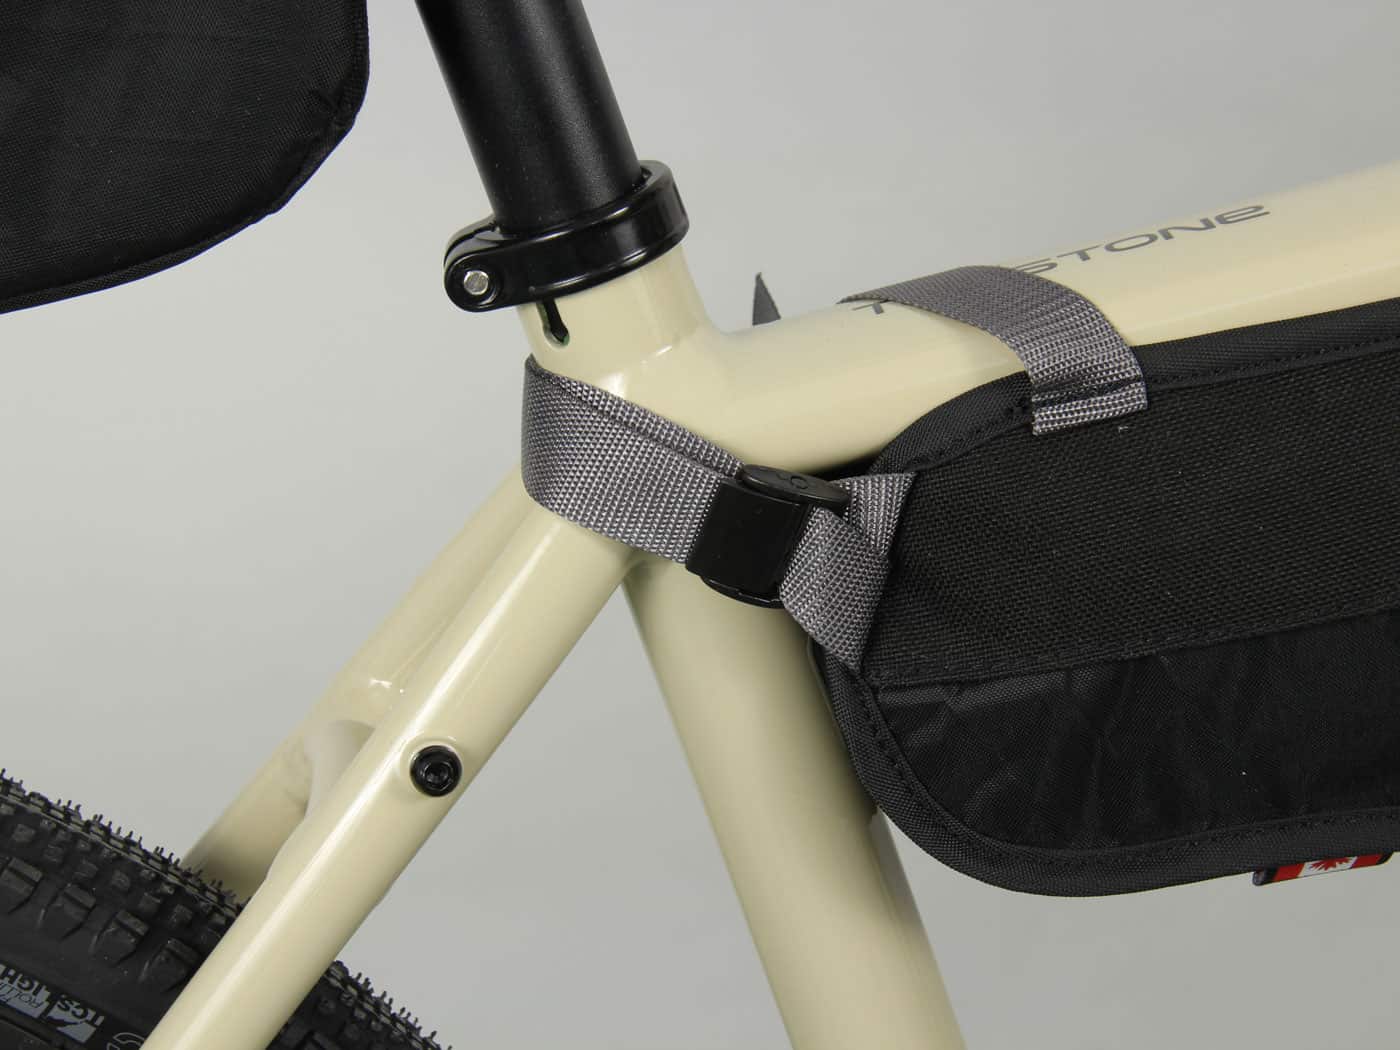 Frame Bags - 100% waterproof